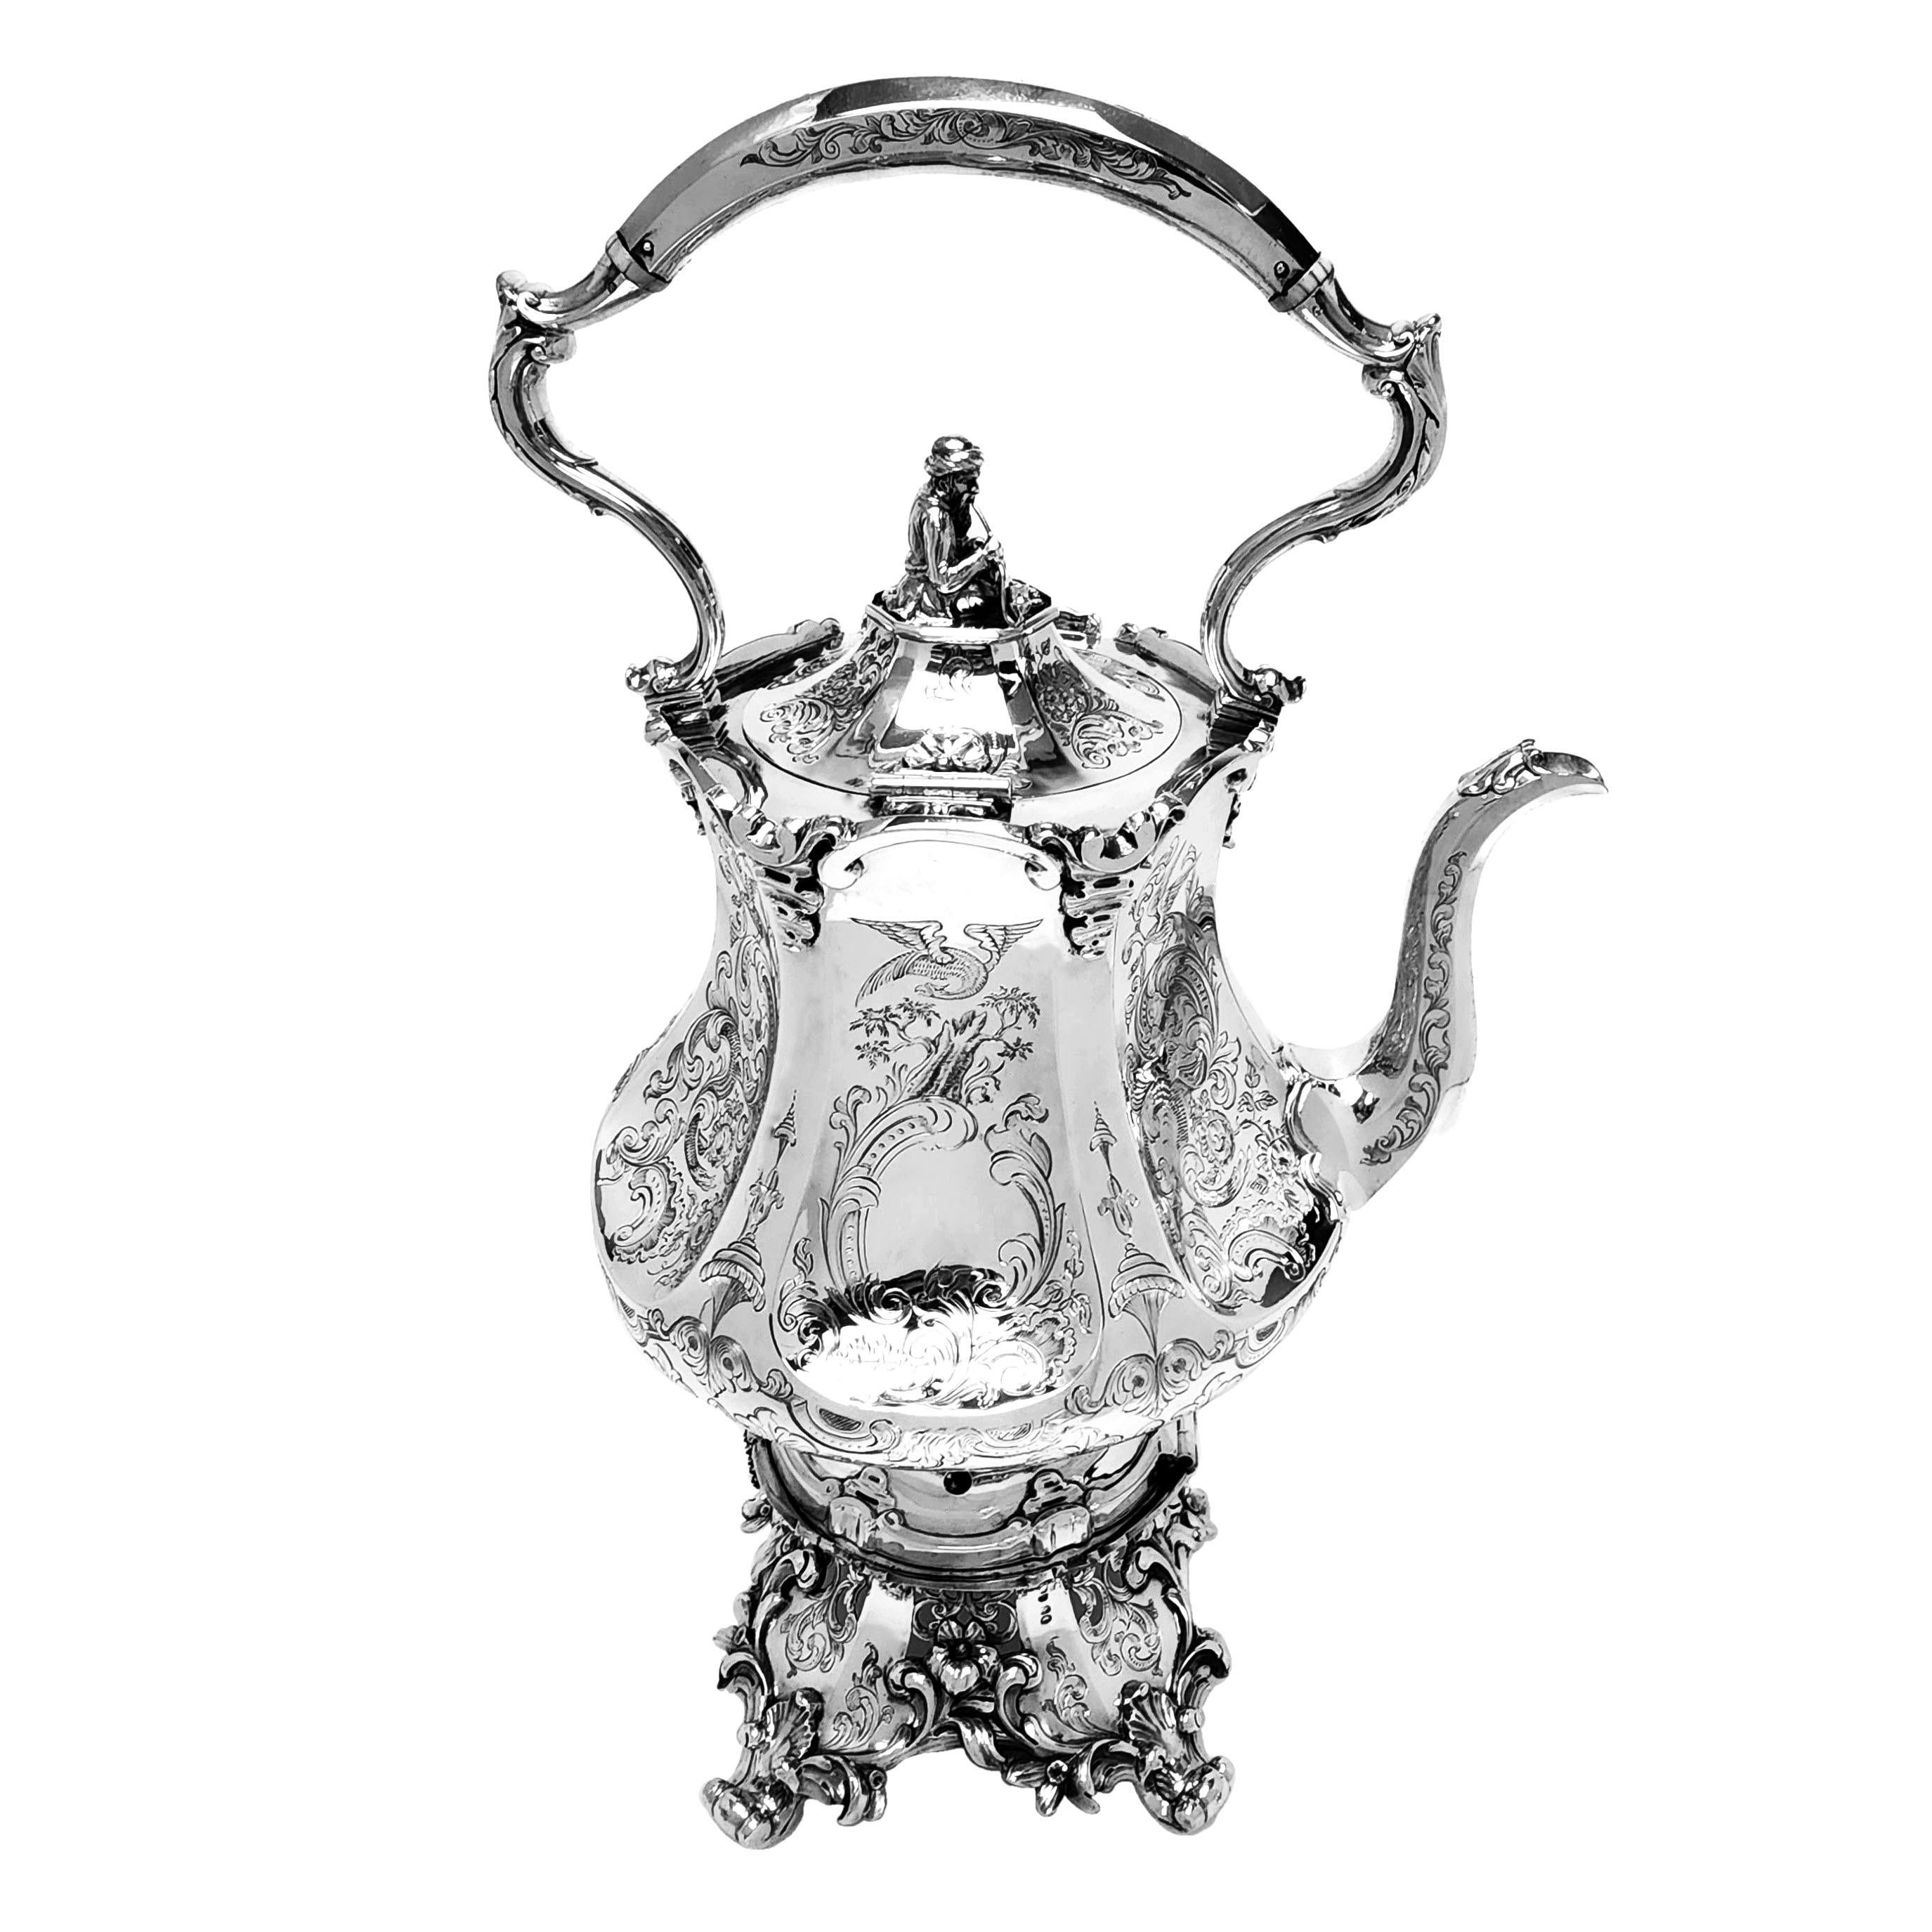 Ein prächtiger antiker viktorianischer Wasserkocher aus massivem Silber auf einem Ständer. Der Kessel hat eine zarte, facettierte Form, wobei jede Platte ein detailliertes, eingraviertes Design mit Vögeln, Schriftrollen und stilisierten Blättern und